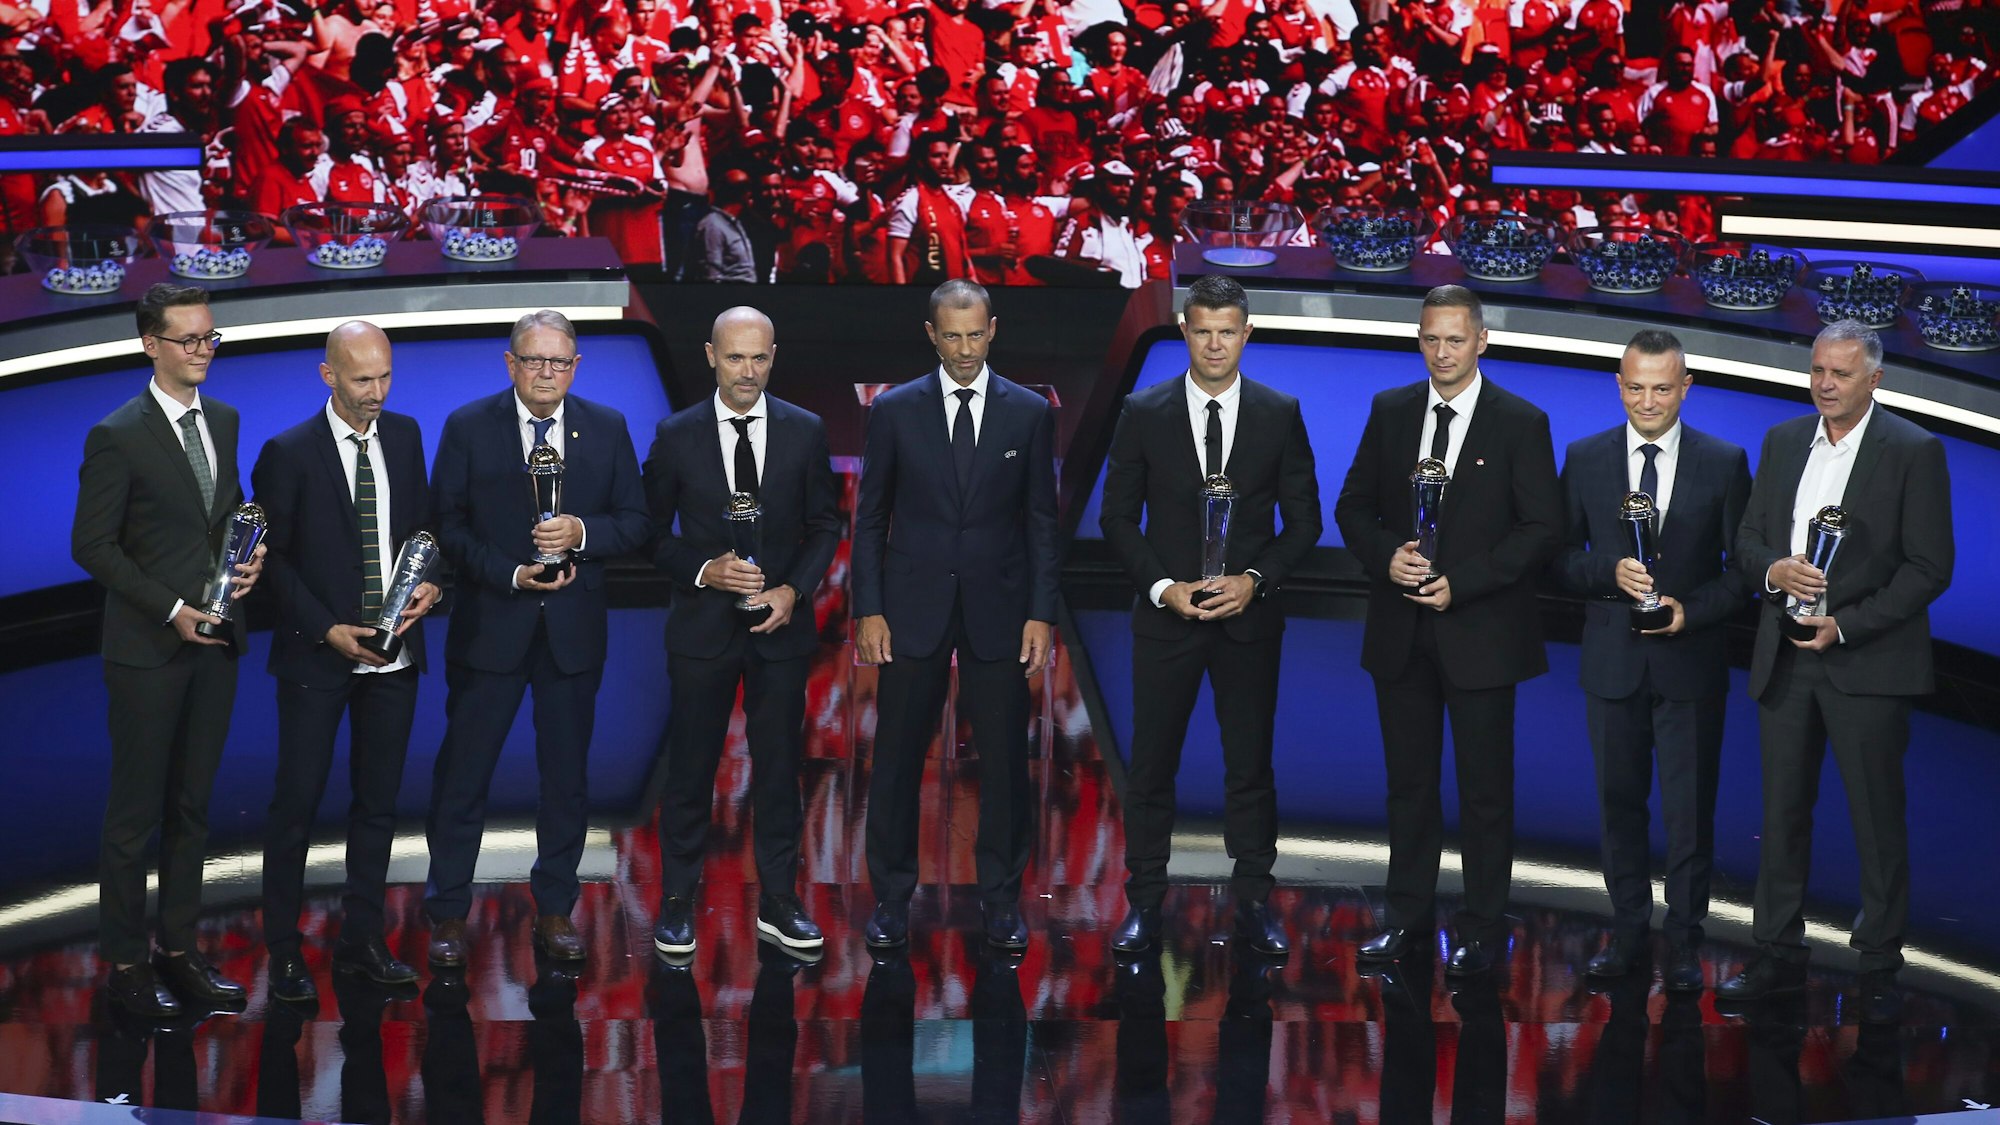 Während der Auslosung der Fußball-Champions-League erhielten die dänischen Mediziner vom UEFA-Präsidenten eine Auszeichnung.